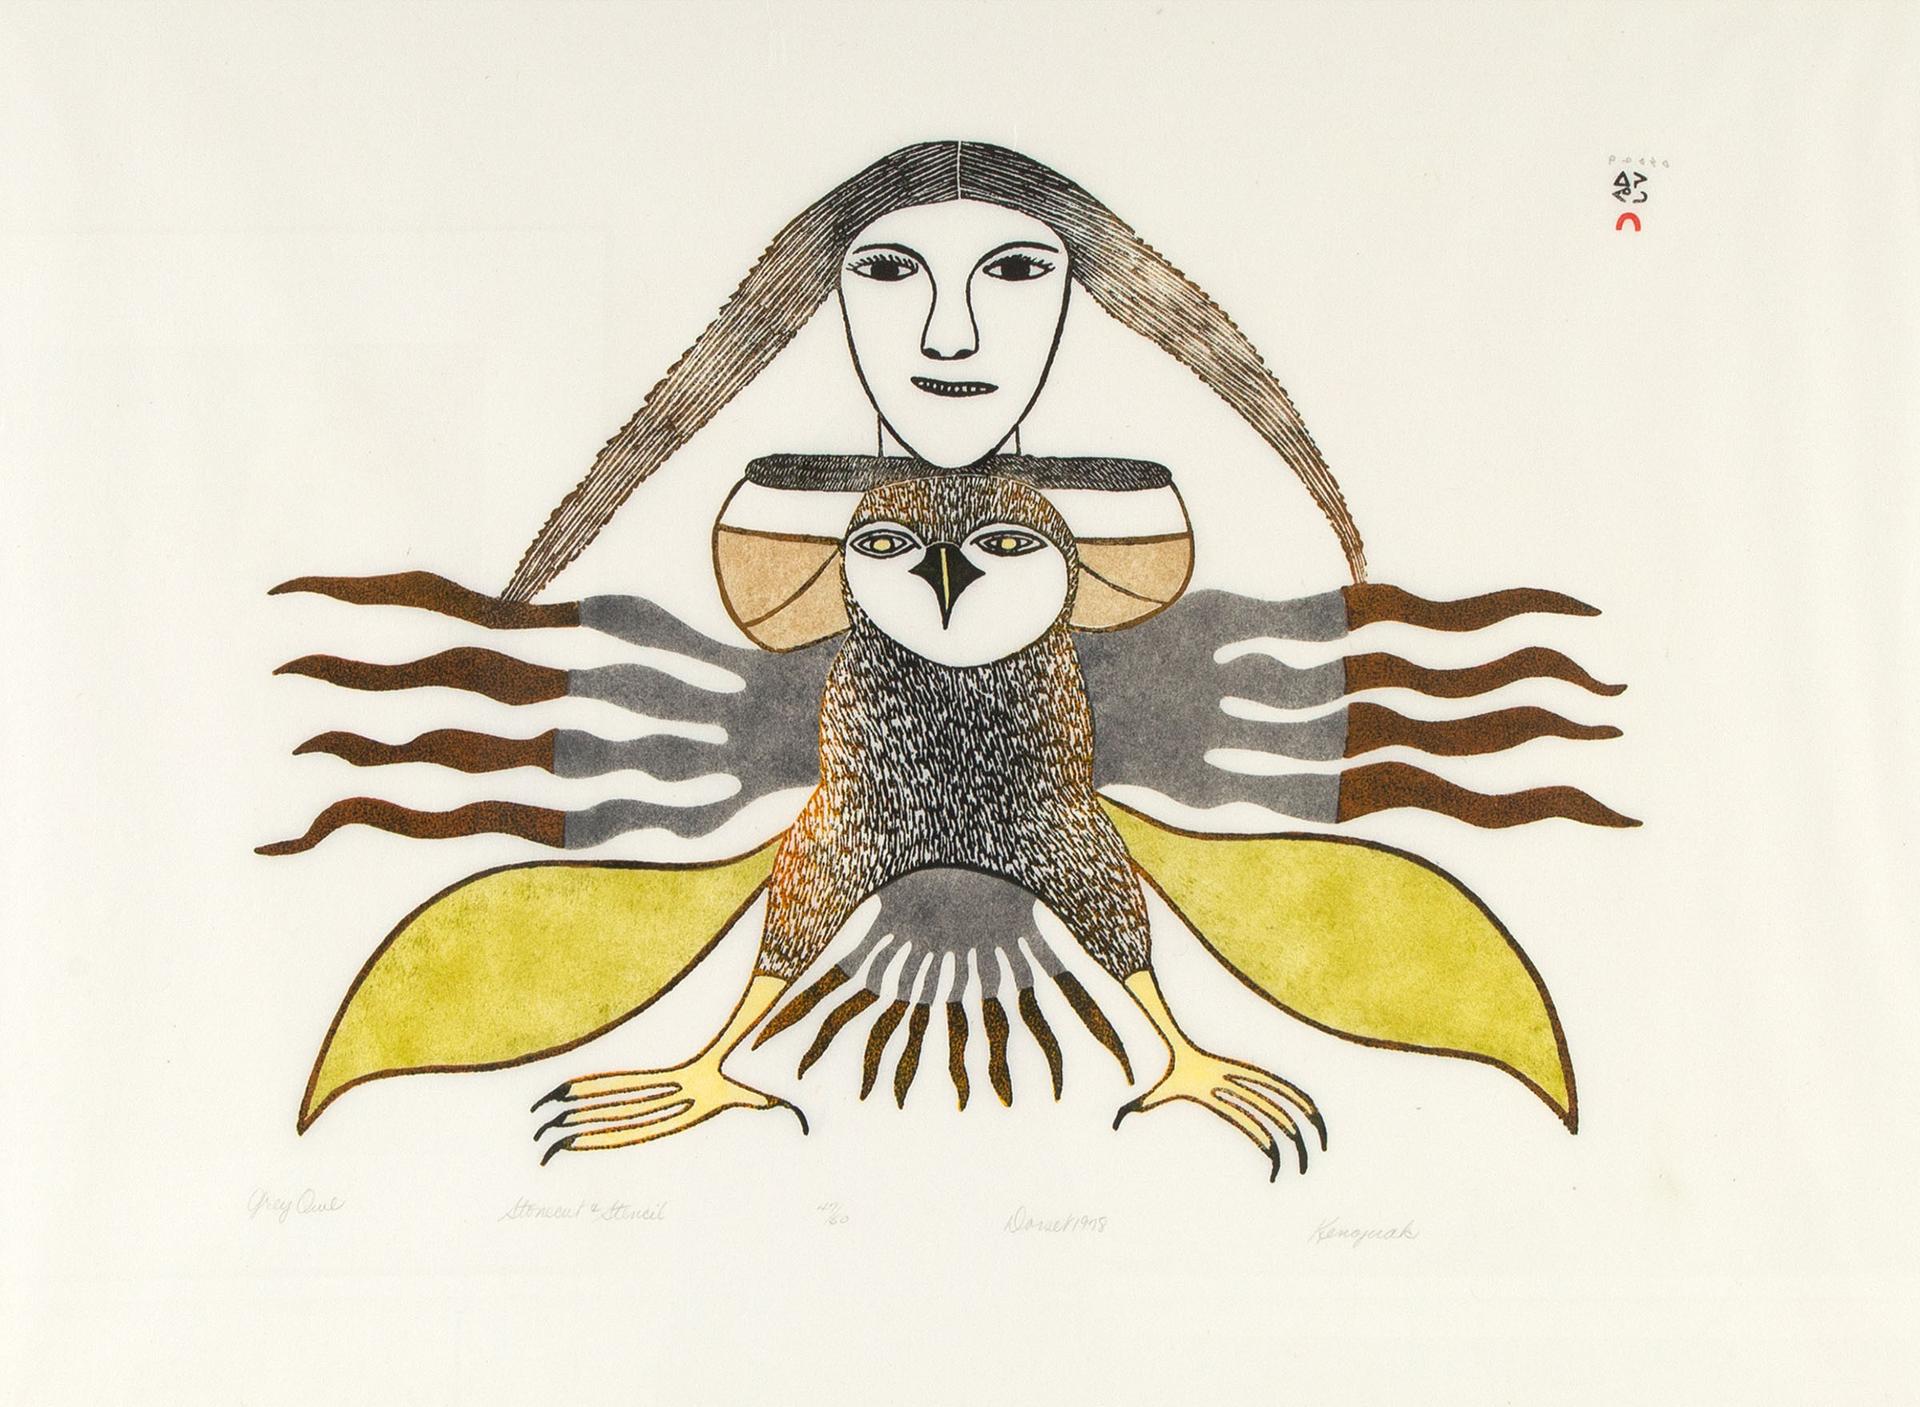 Kenojuak Ashevak (1927-2013) - Grey Owl